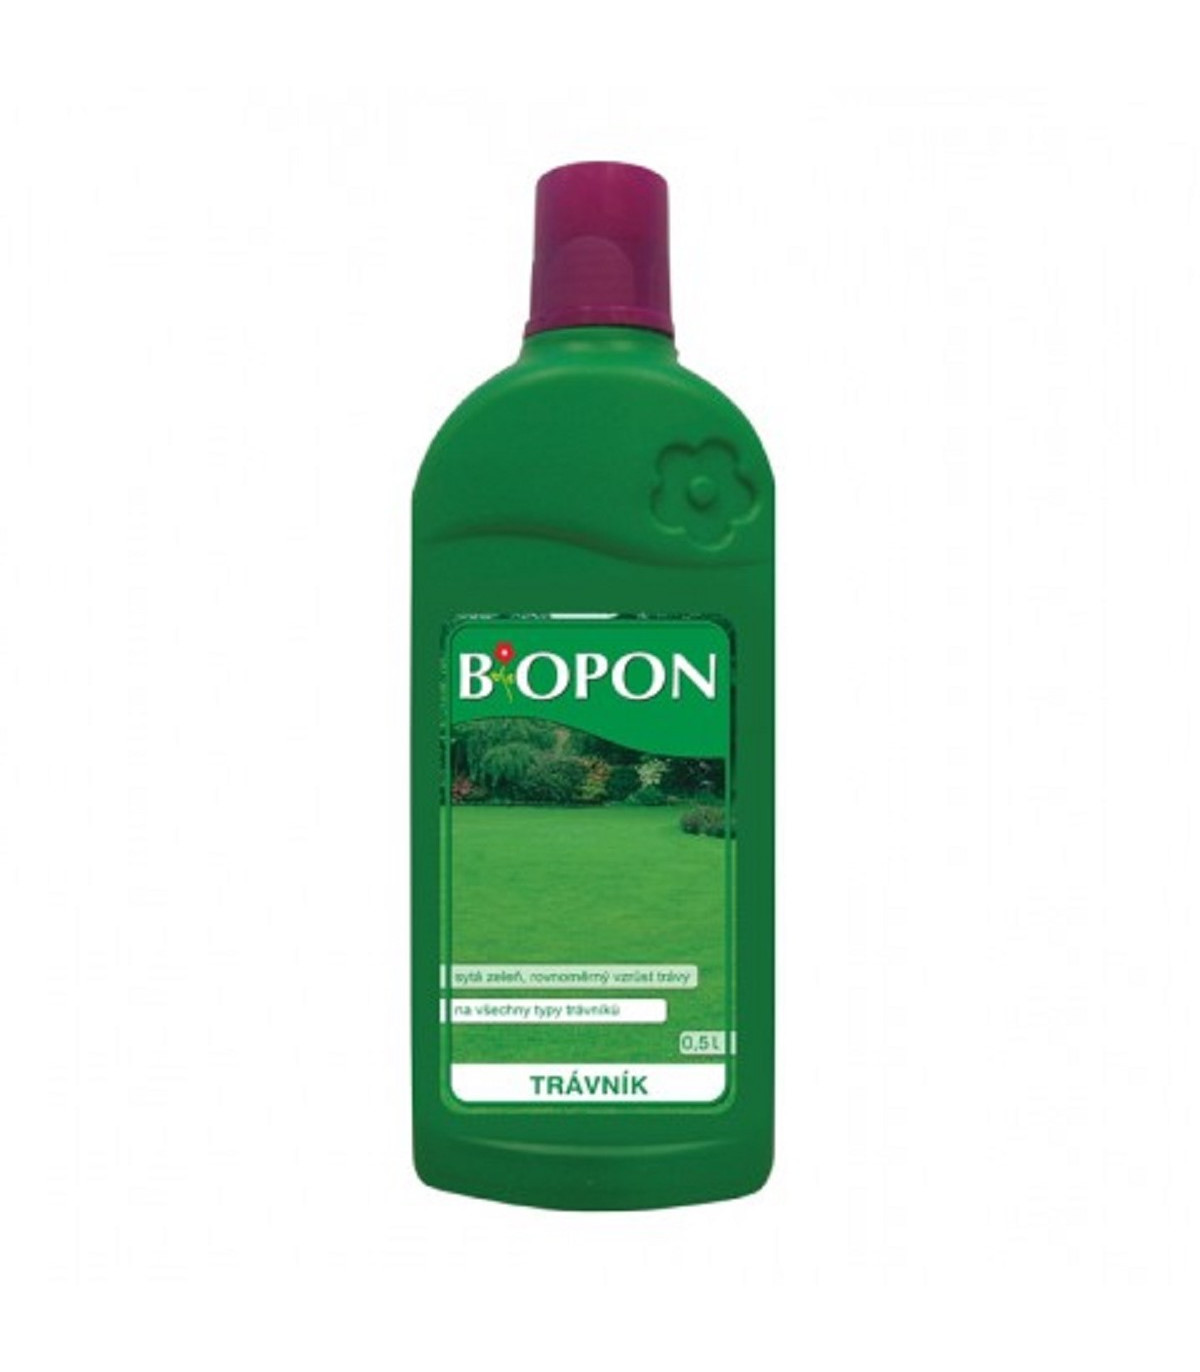 Hnojivo na trávník - BoPon - tekuté hnojivo - 500 ml